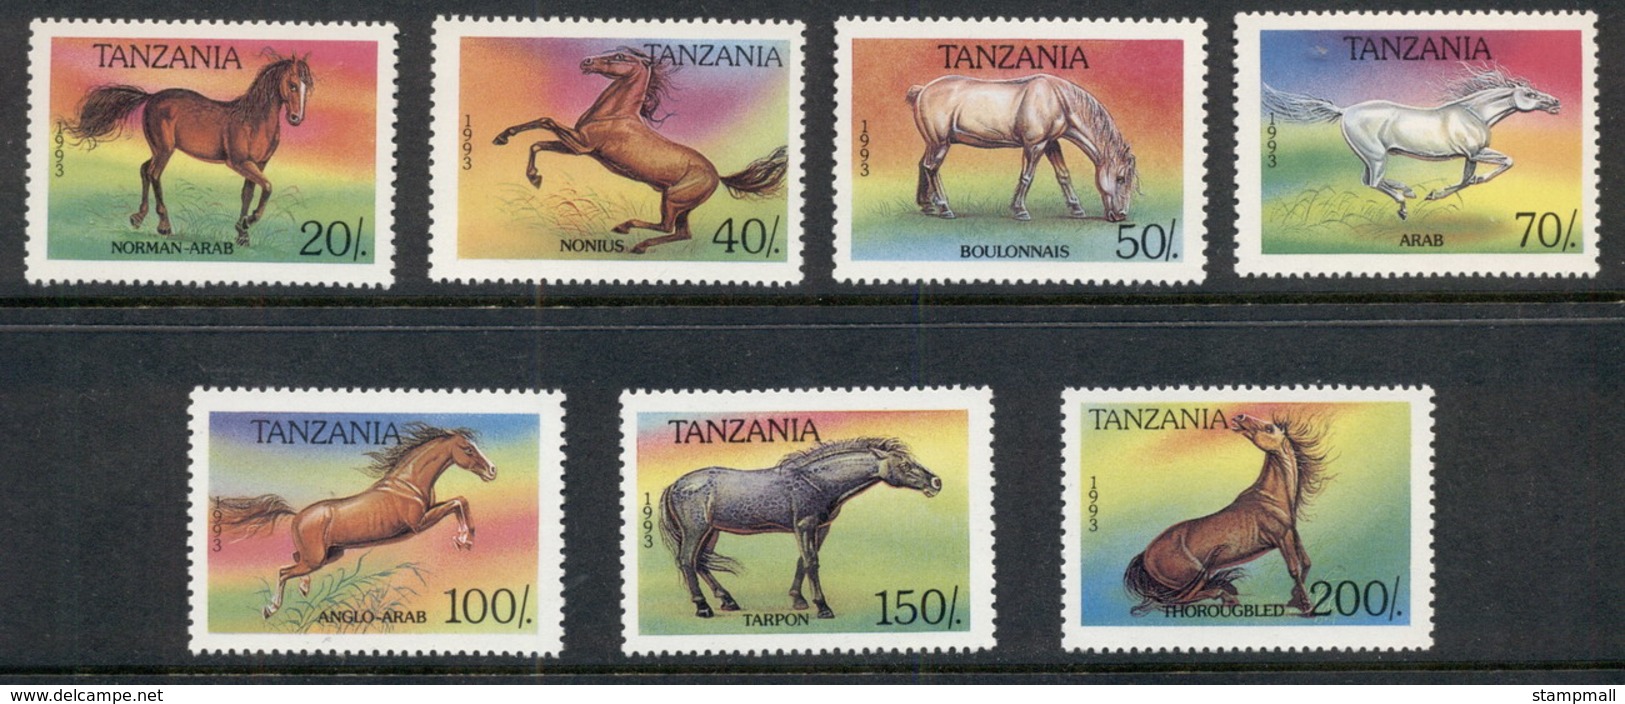 Tanzania 1993 Horses MUH - Swaziland (1968-...)